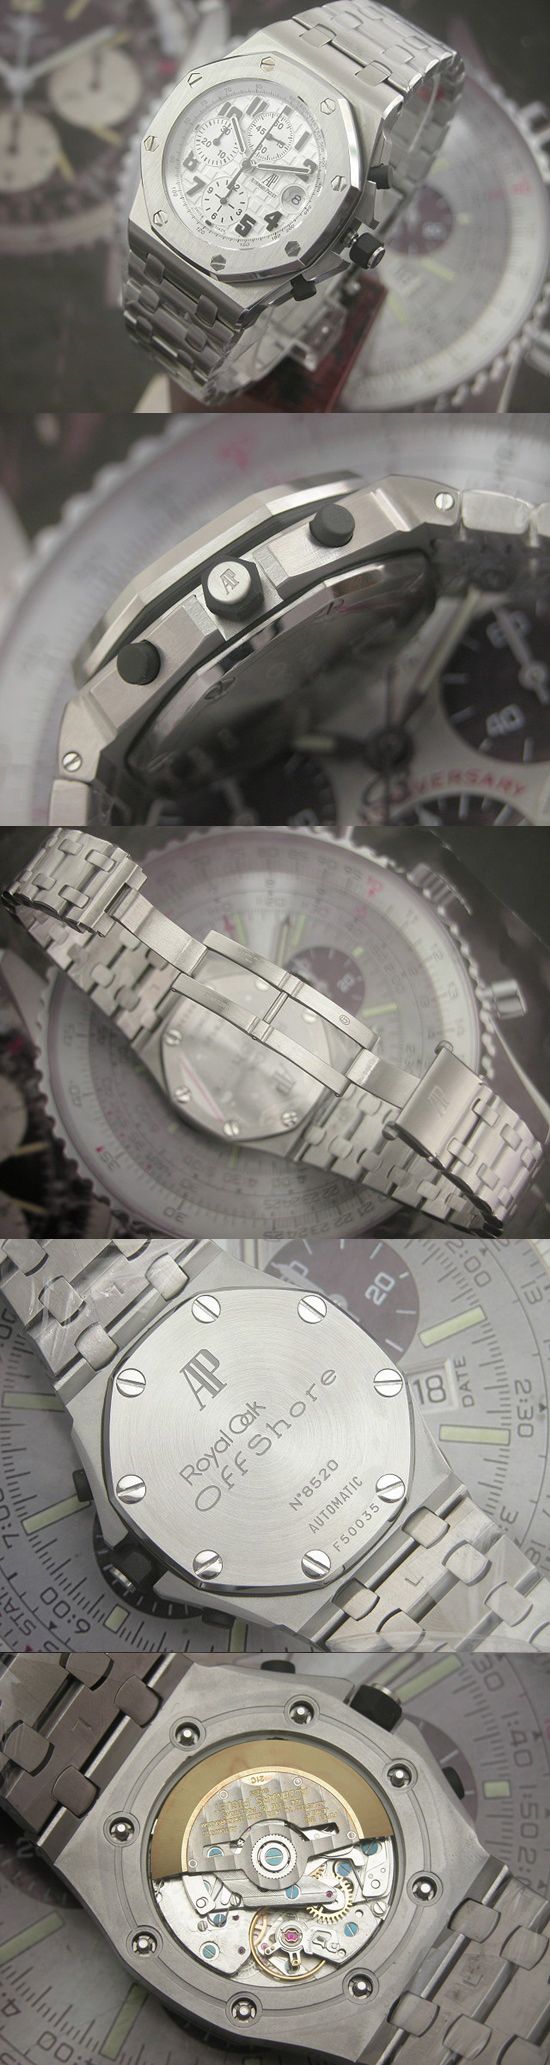 おしゃれなブランド時計がオーデマピゲ-ロイヤルオークオフショア-AUDEMARS PIGUET-25721TI.OO.1000TI.05-af-男性用を提供します.